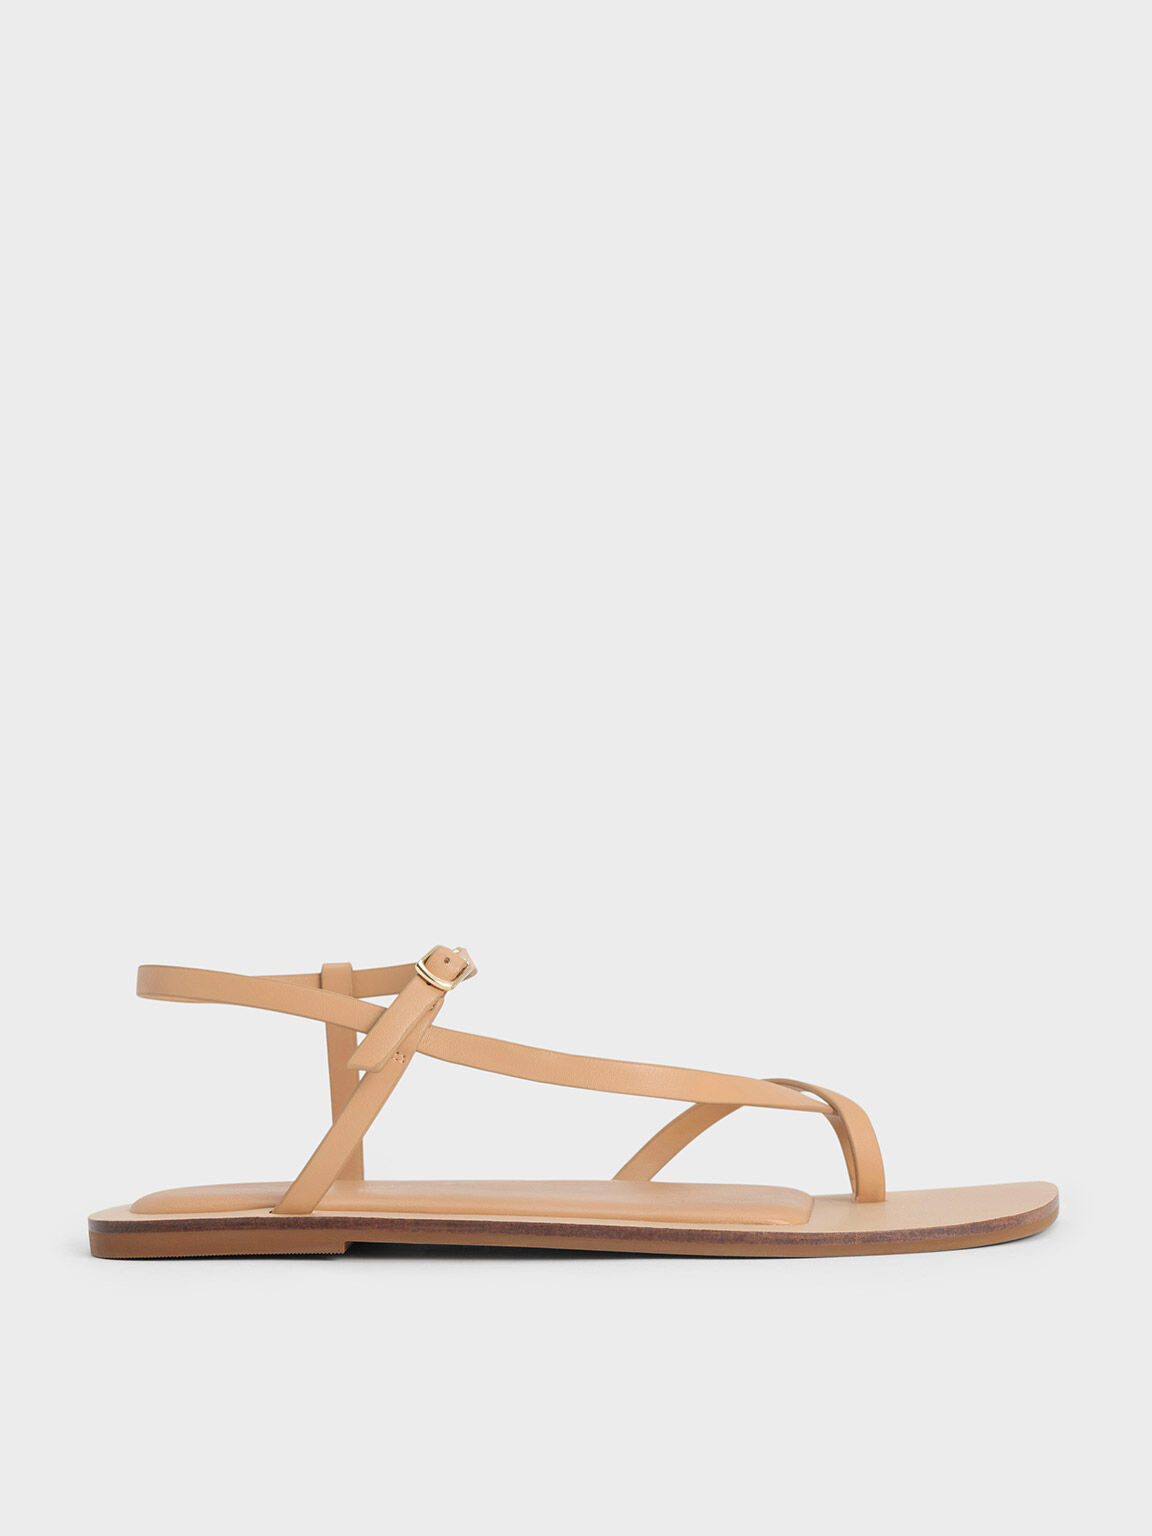 Asymmetric Toe Ring Sandals, Tan, hi-res